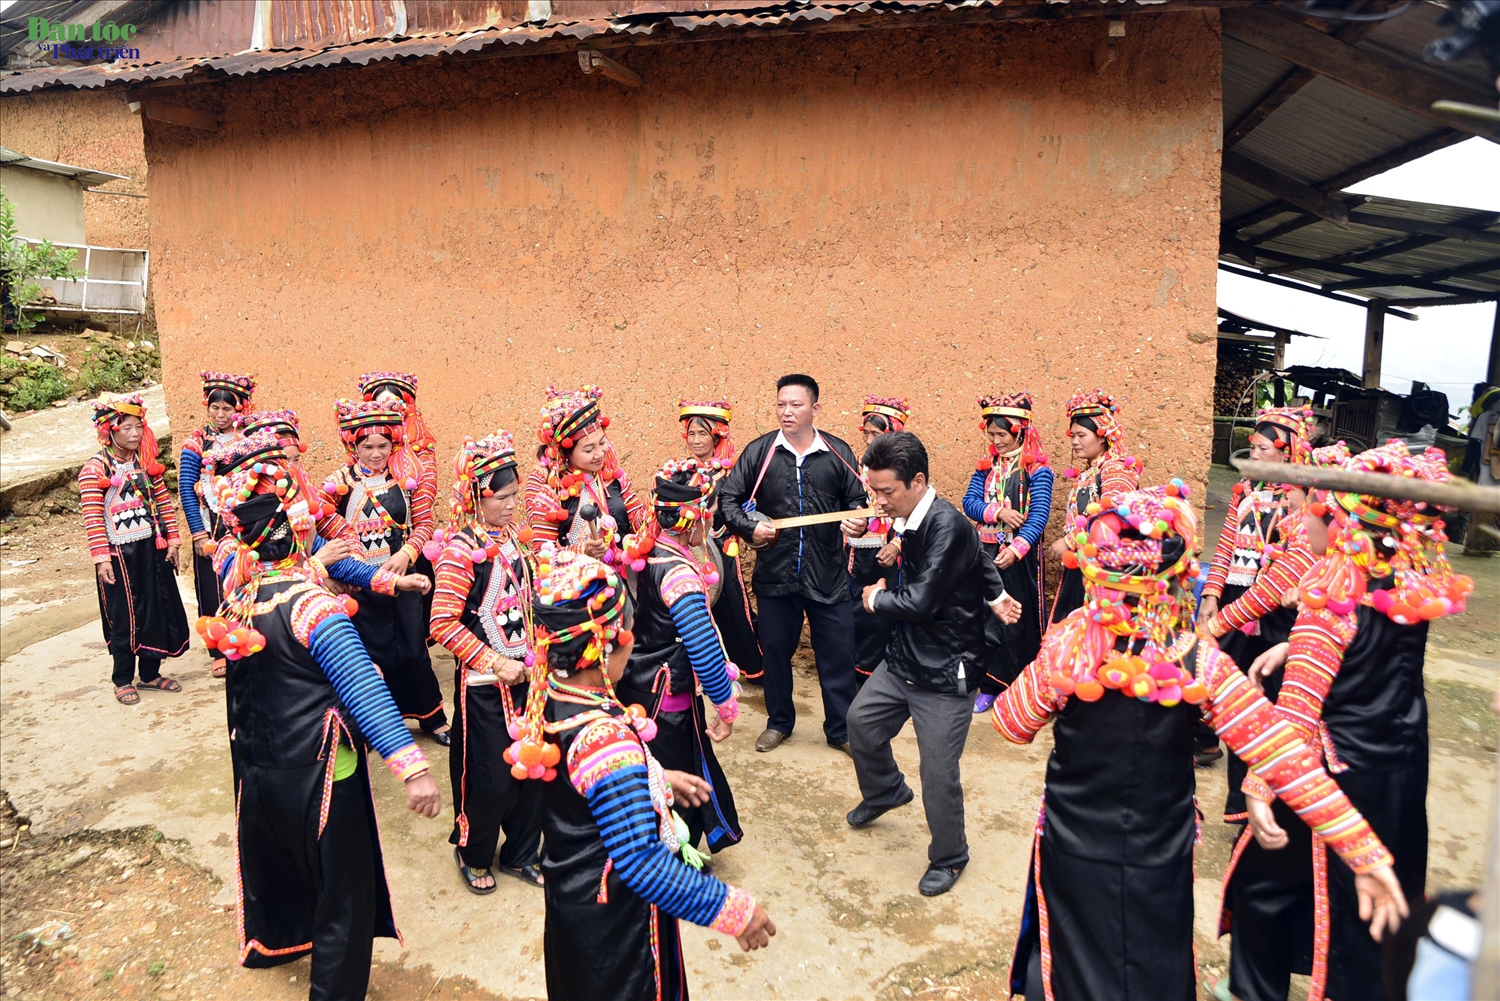 Tại nhà văn hoá, hay các bãi đất rộng, mọi người tưng bừng biểu diễn những vũ điệu dân ca, dân vũ truyền thống